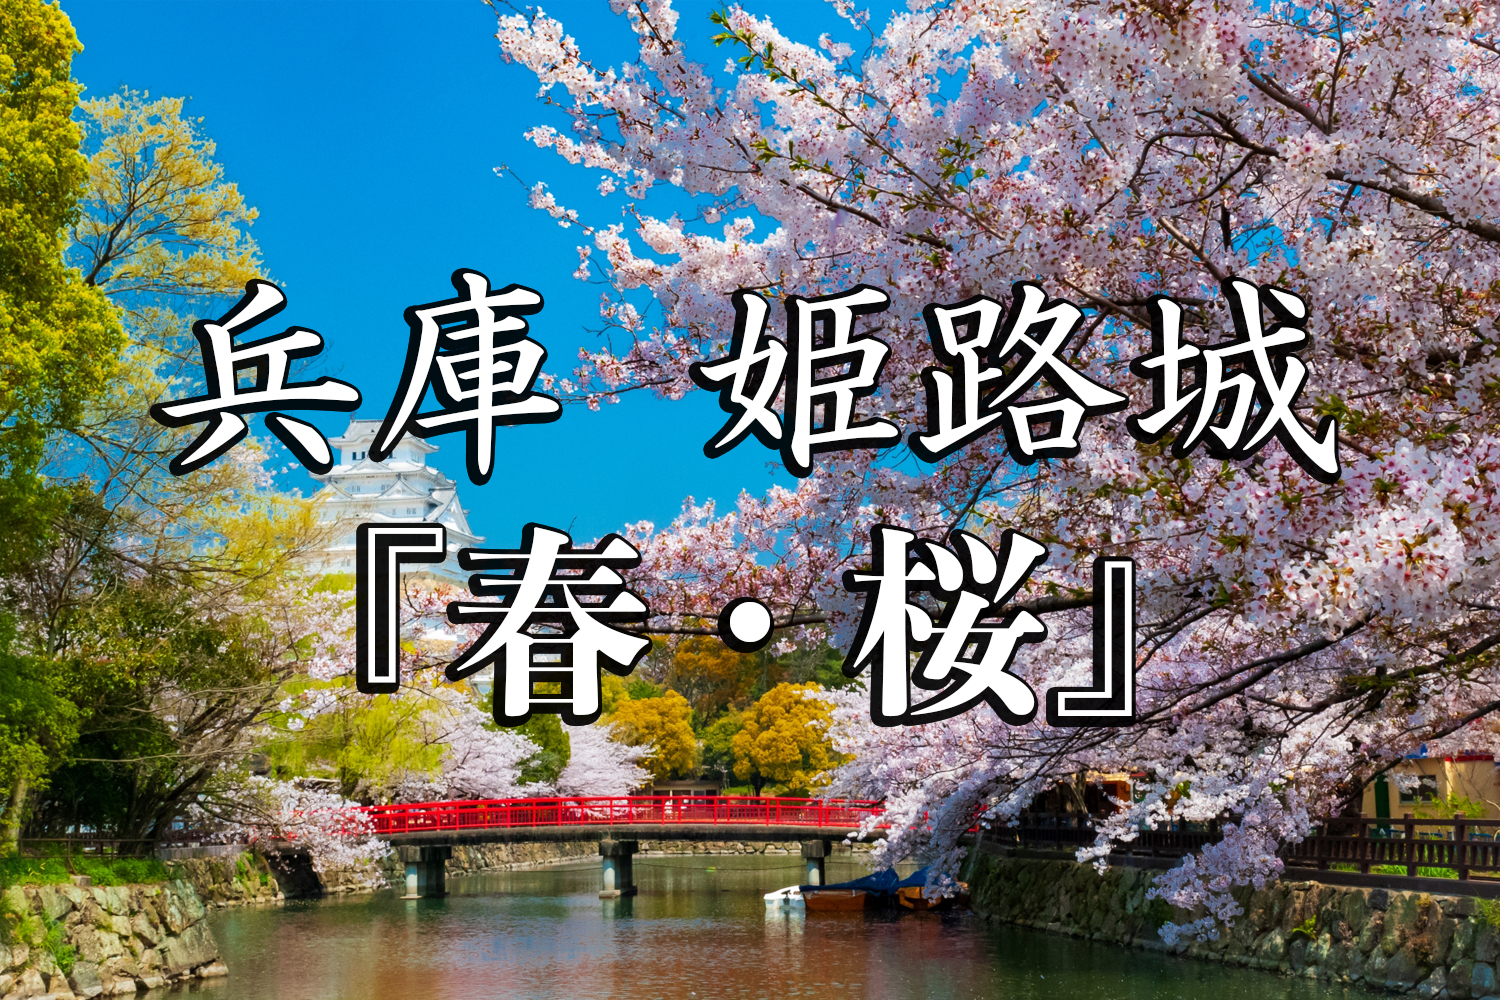 兵庫県 姫路城 桜と城の景色が美しい春におすすめのスポット 写真の紹介 アクセス情報や駐車場情報など 写真や映像で紹介する関西 近畿の絶景 カメラ 観光スポット